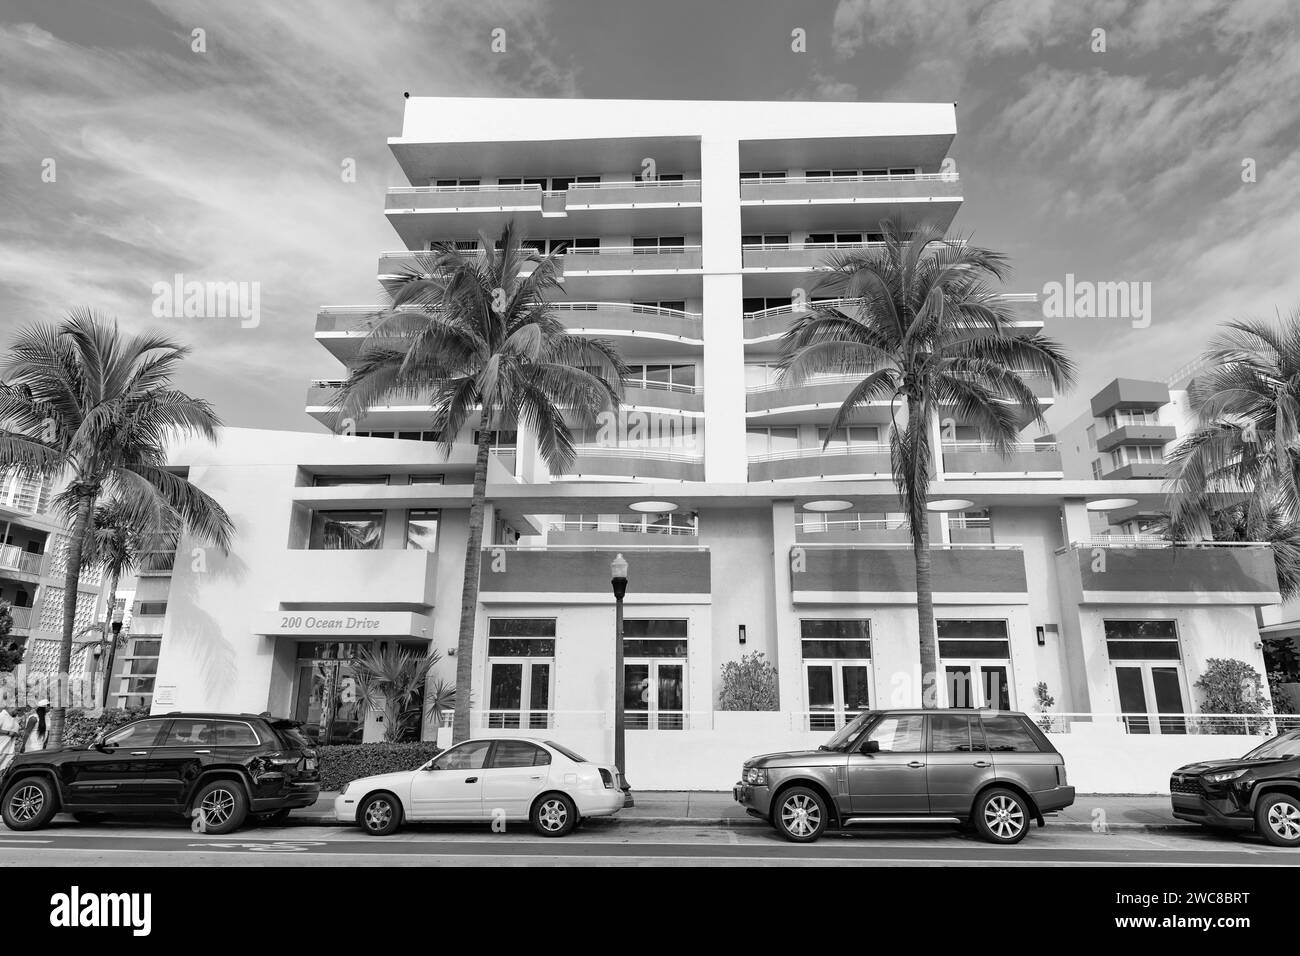 Miami, Floride États-Unis - 18 avril 2021: Miami South Beach Ocean Drive bâtiment d'architecture dans le centre-ville de miami Street Banque D'Images